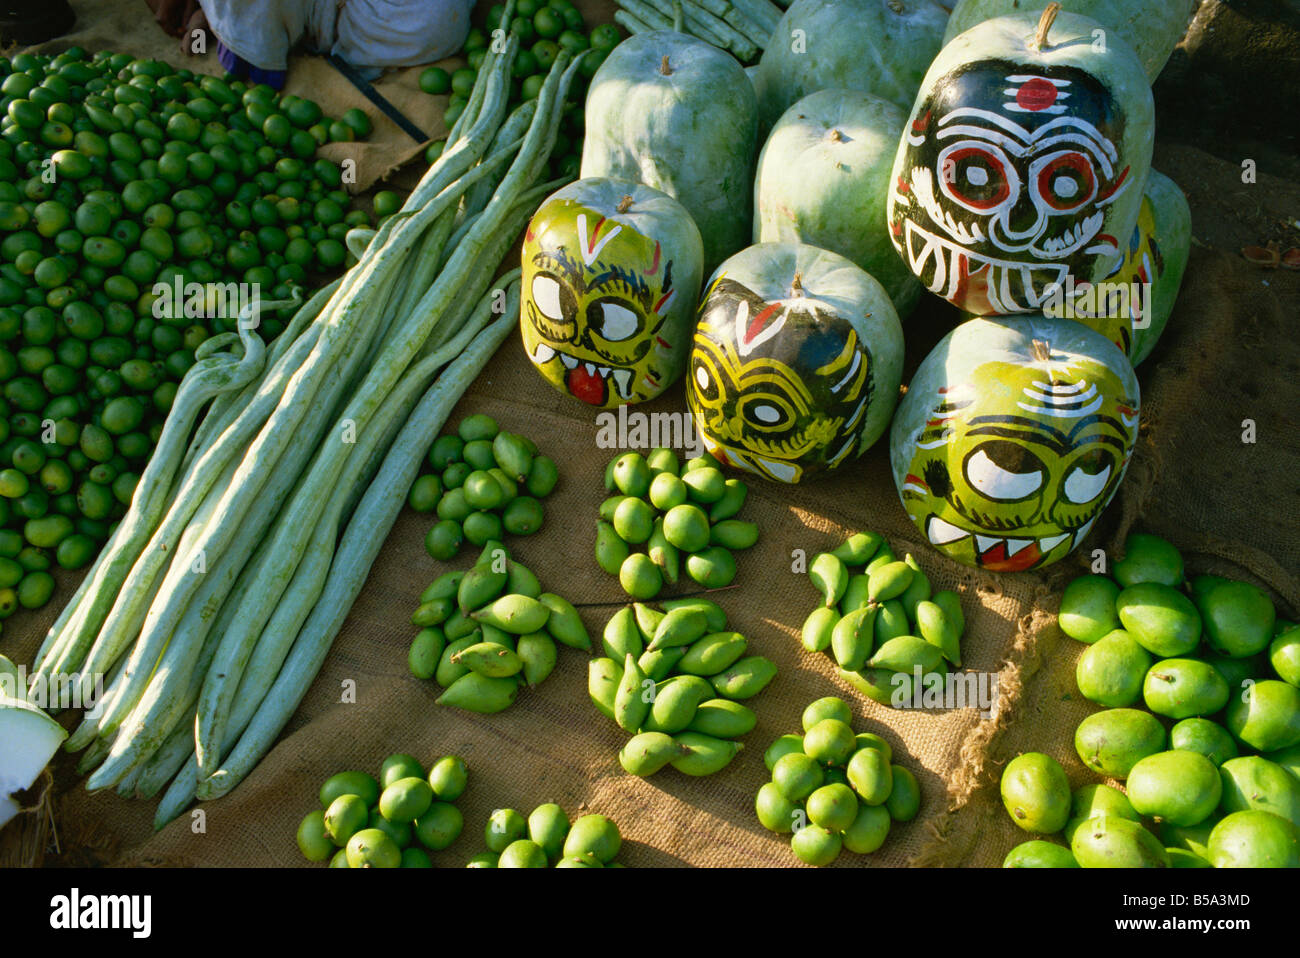 Mangues vertes snake gourdes et squash peint avec des visages à accrocher en vitrine pour garder les mauvais esprits l'Inde Asie Banque D'Images